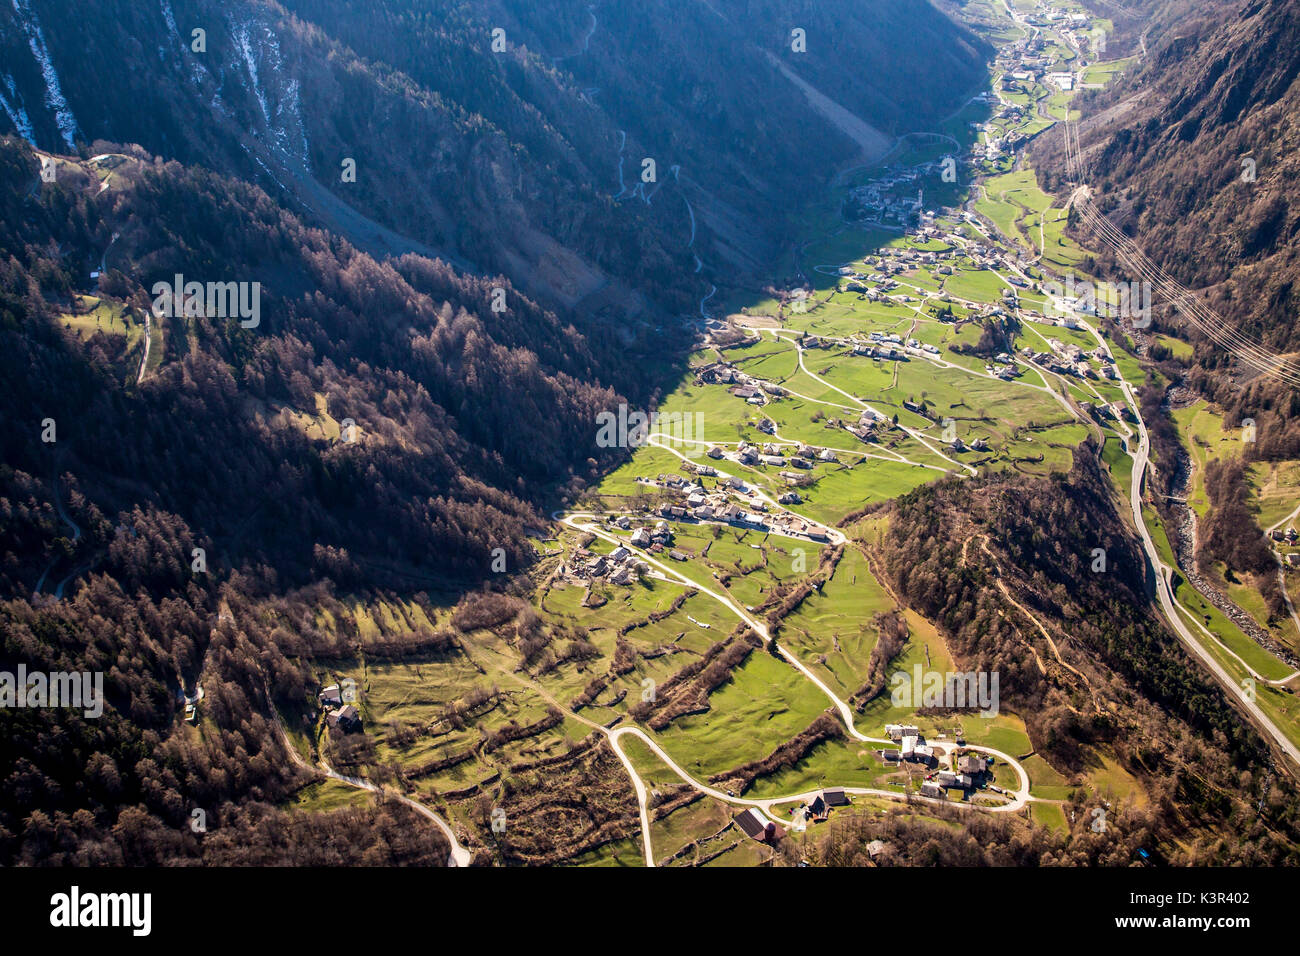 Vista aérea del valle de Poschiavo baja con el verde de sus campos. El valle de Poschiavo, cantón de Grisons Suiza Europa Foto de stock